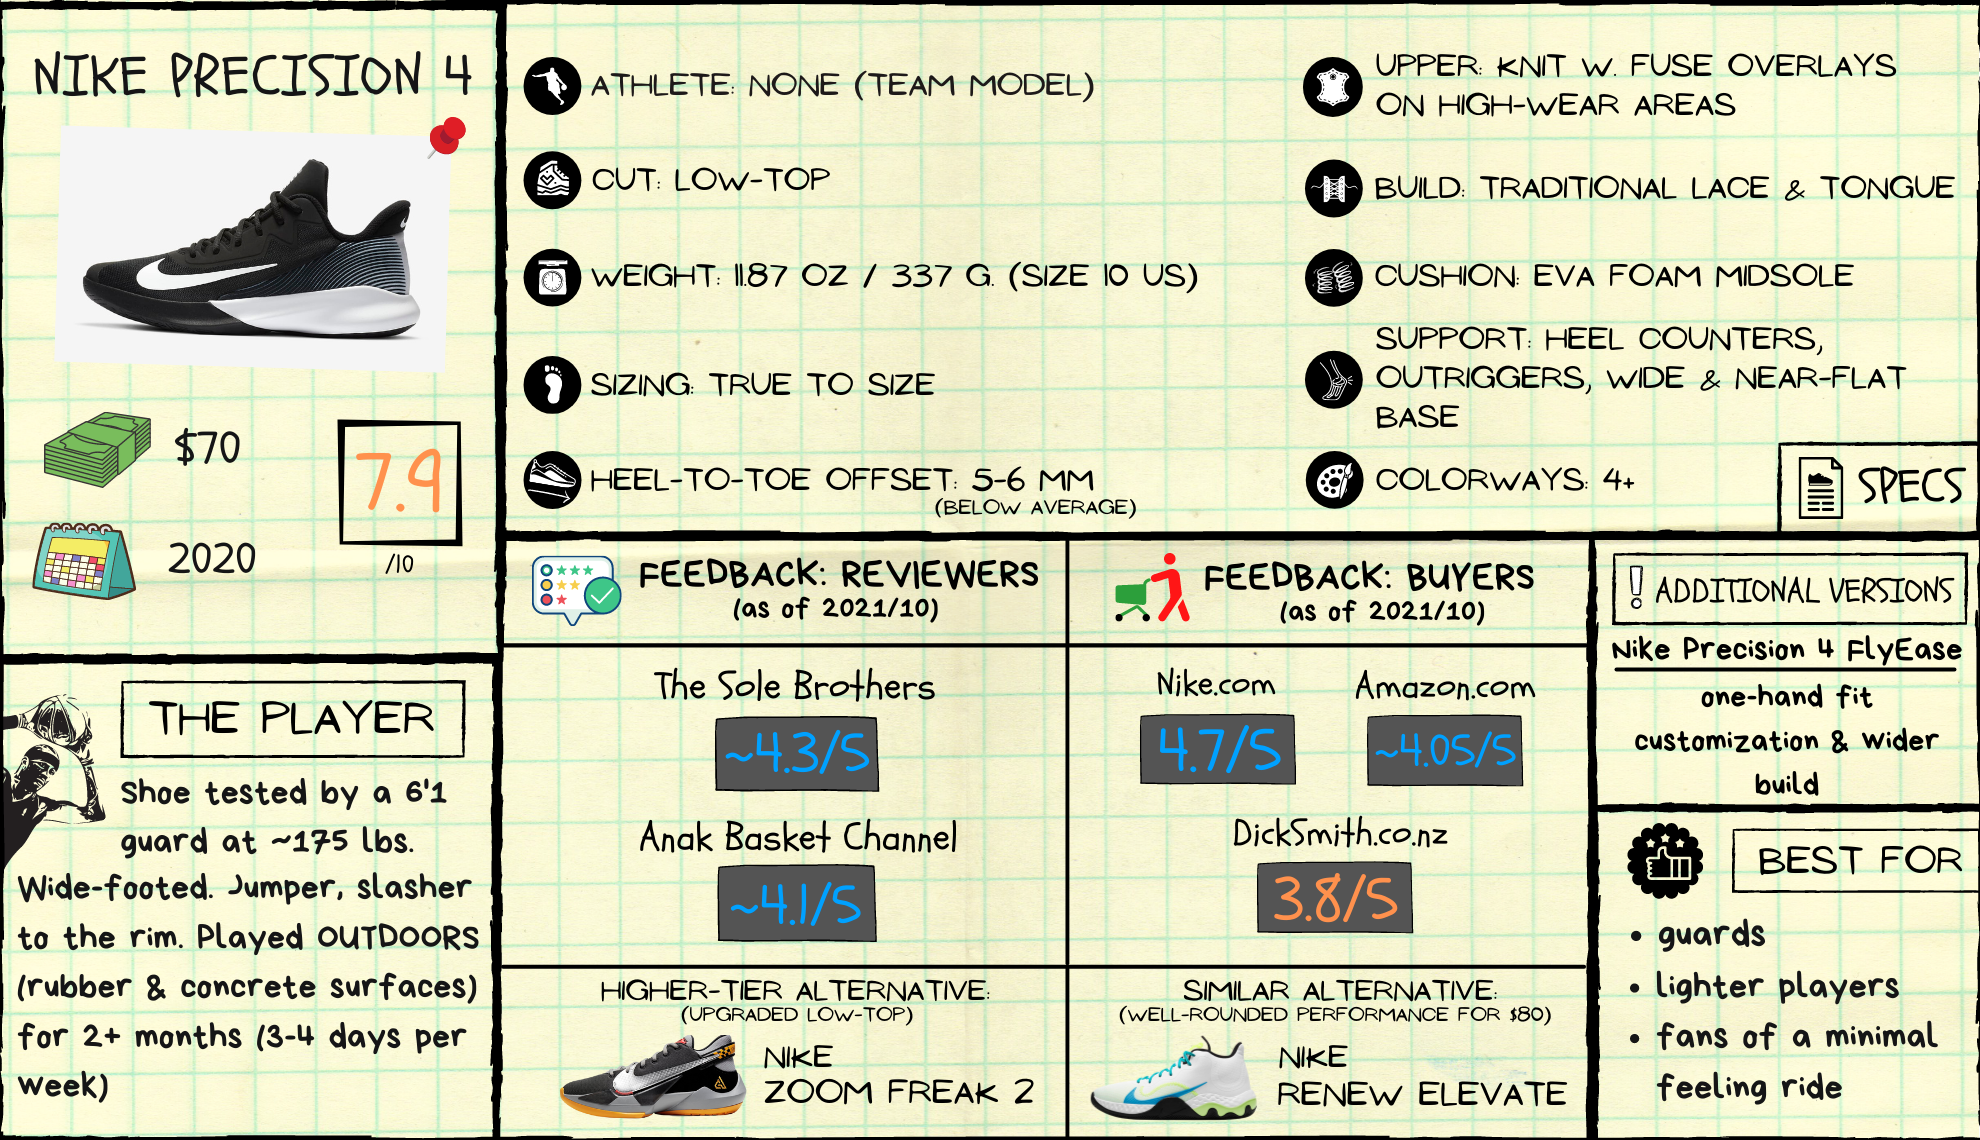 Nike Precision 4 Review: Spec Sheet